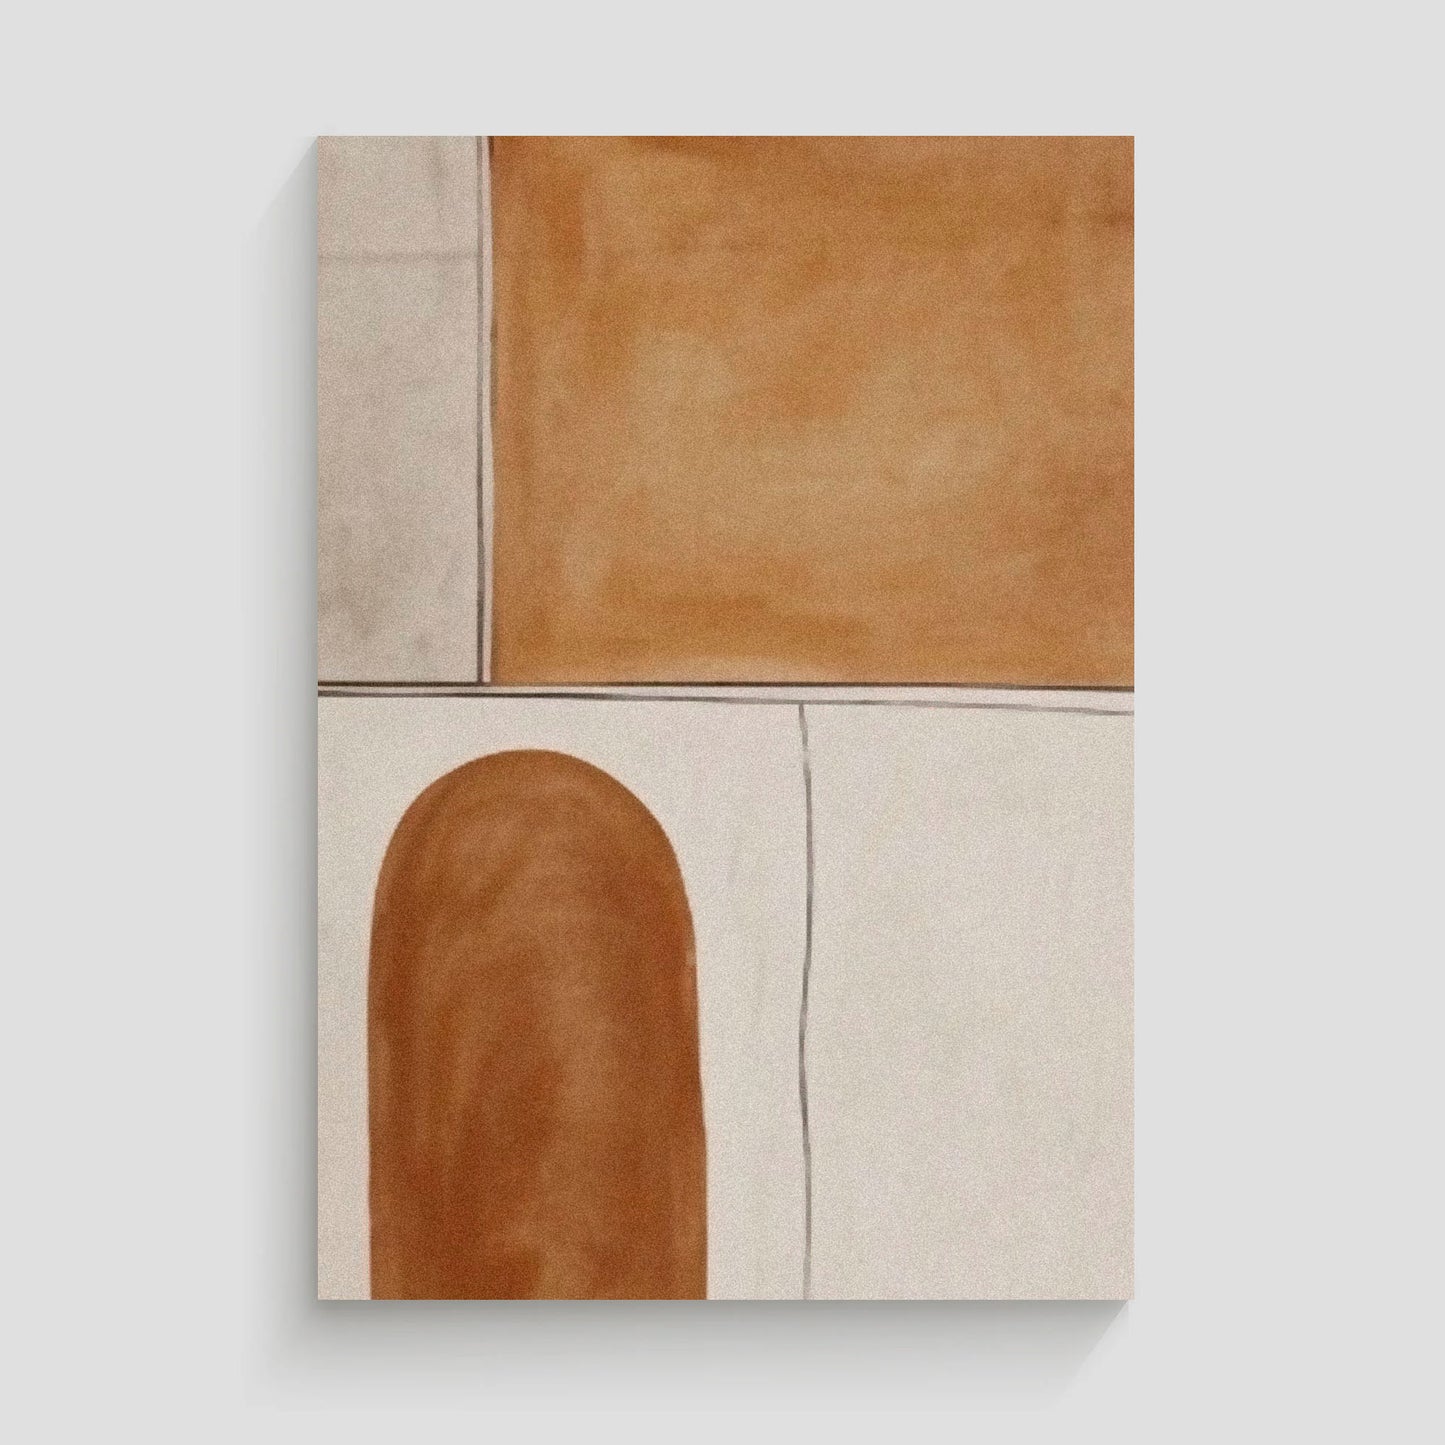 Obra de arte abstracto con una forma arqueada en color marrón sobre un fondo beige claro.